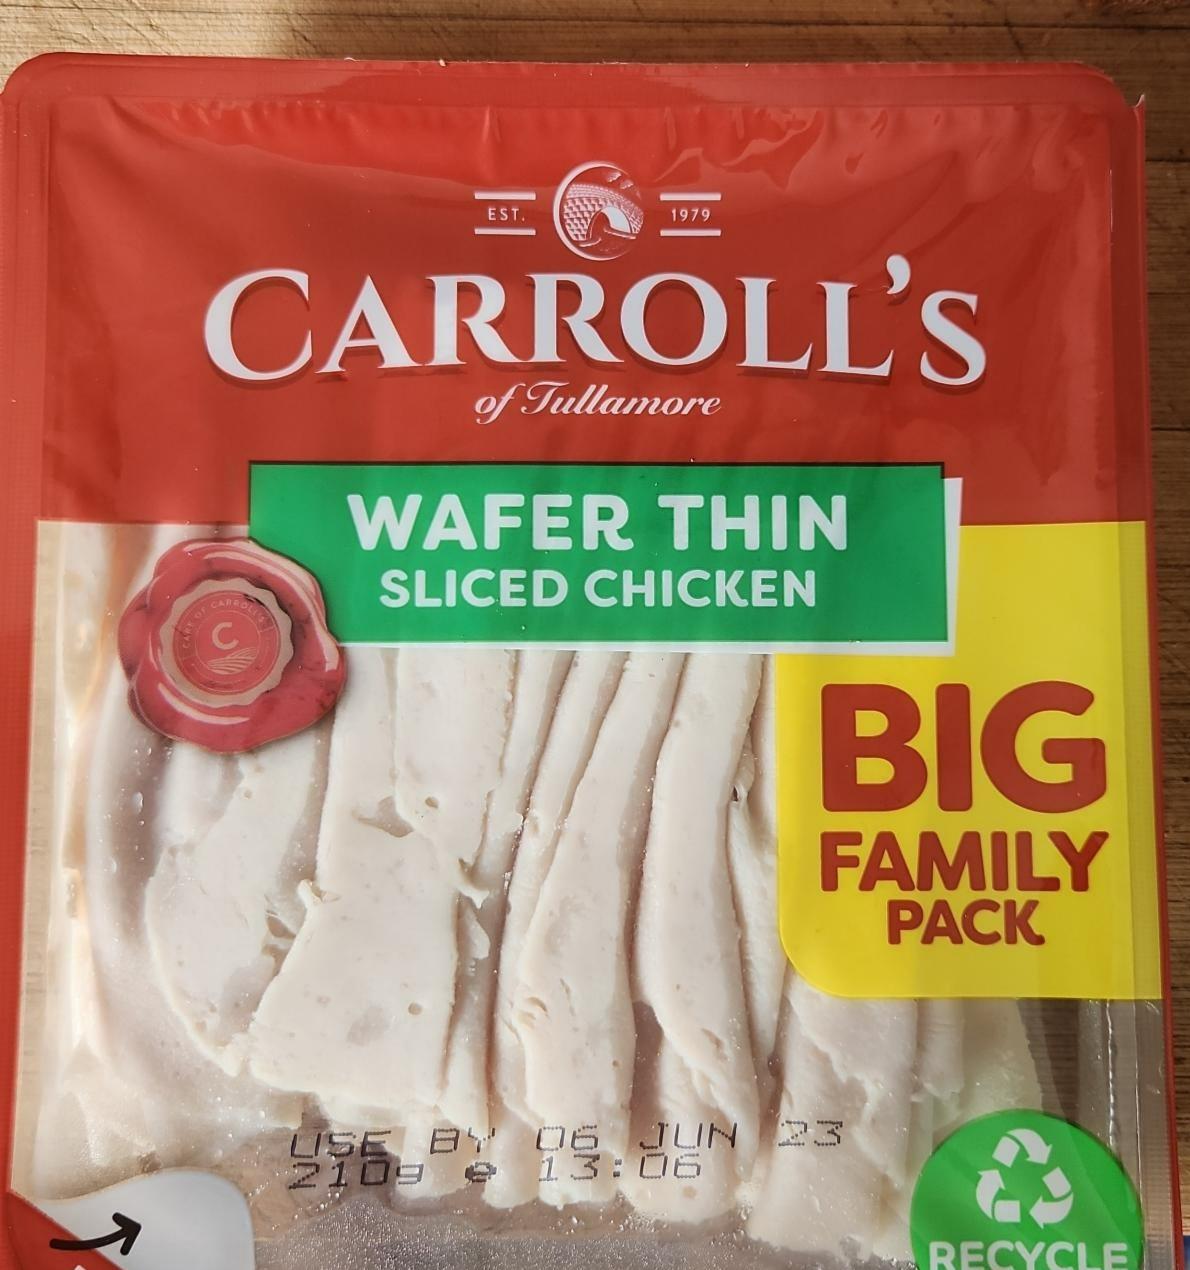 Fotografie - Wafer thin sliced chicken Carroll's